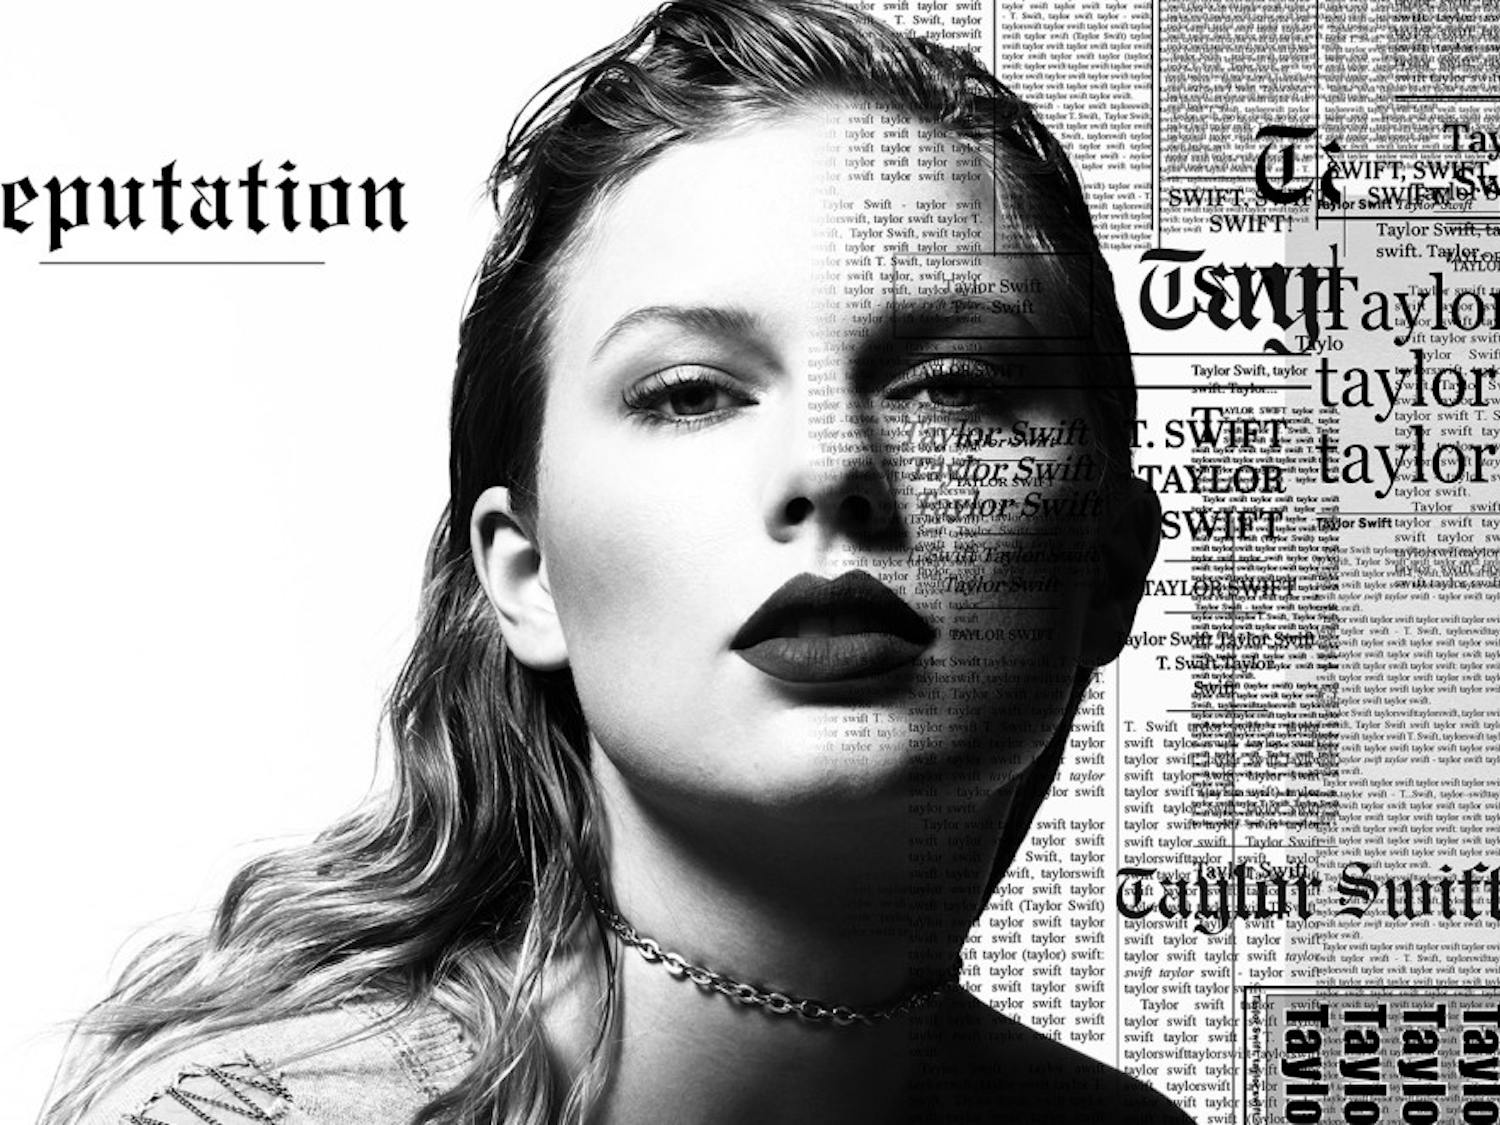 Taylor-Swift-reputation-ART-2017-billboard-1548